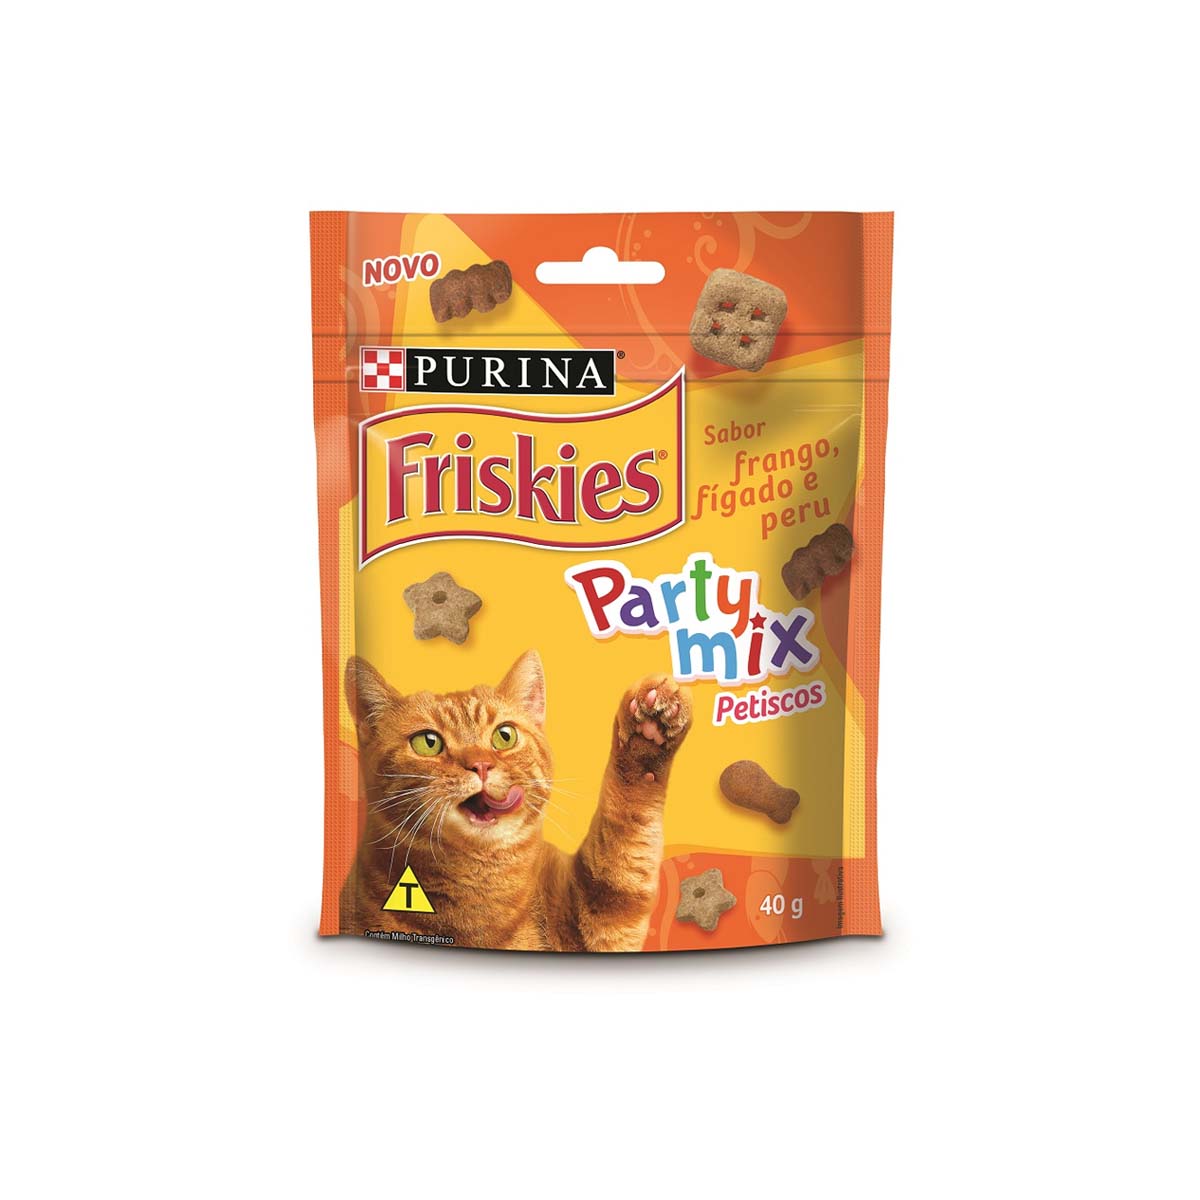 Petiscos Friskies para Gatos Party Mix Frango, Fígado e Peru 40g